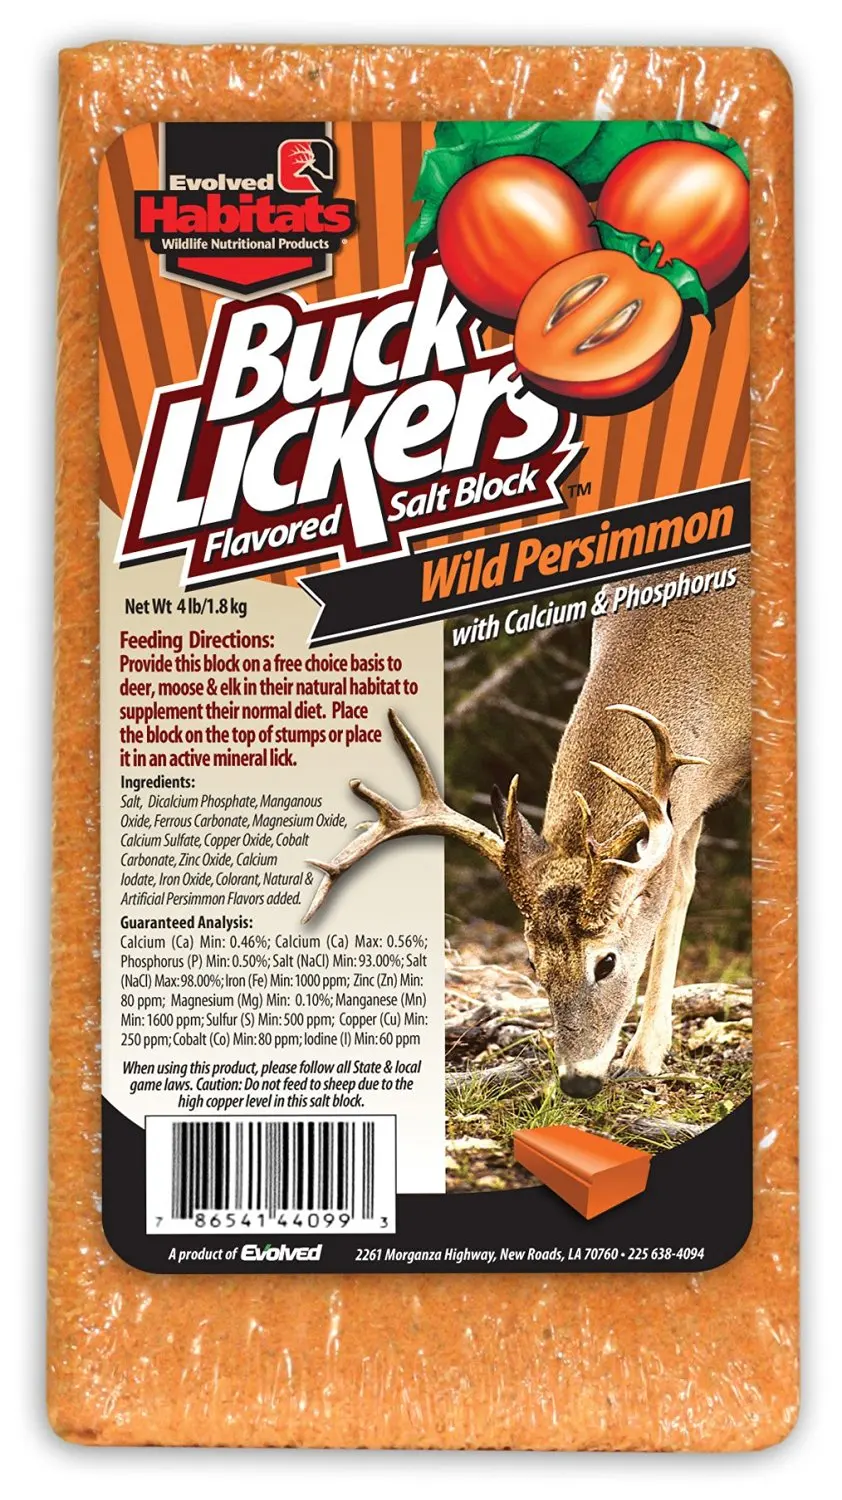 Wild Persimmon Buck Lickers Flavored Salt Block. 